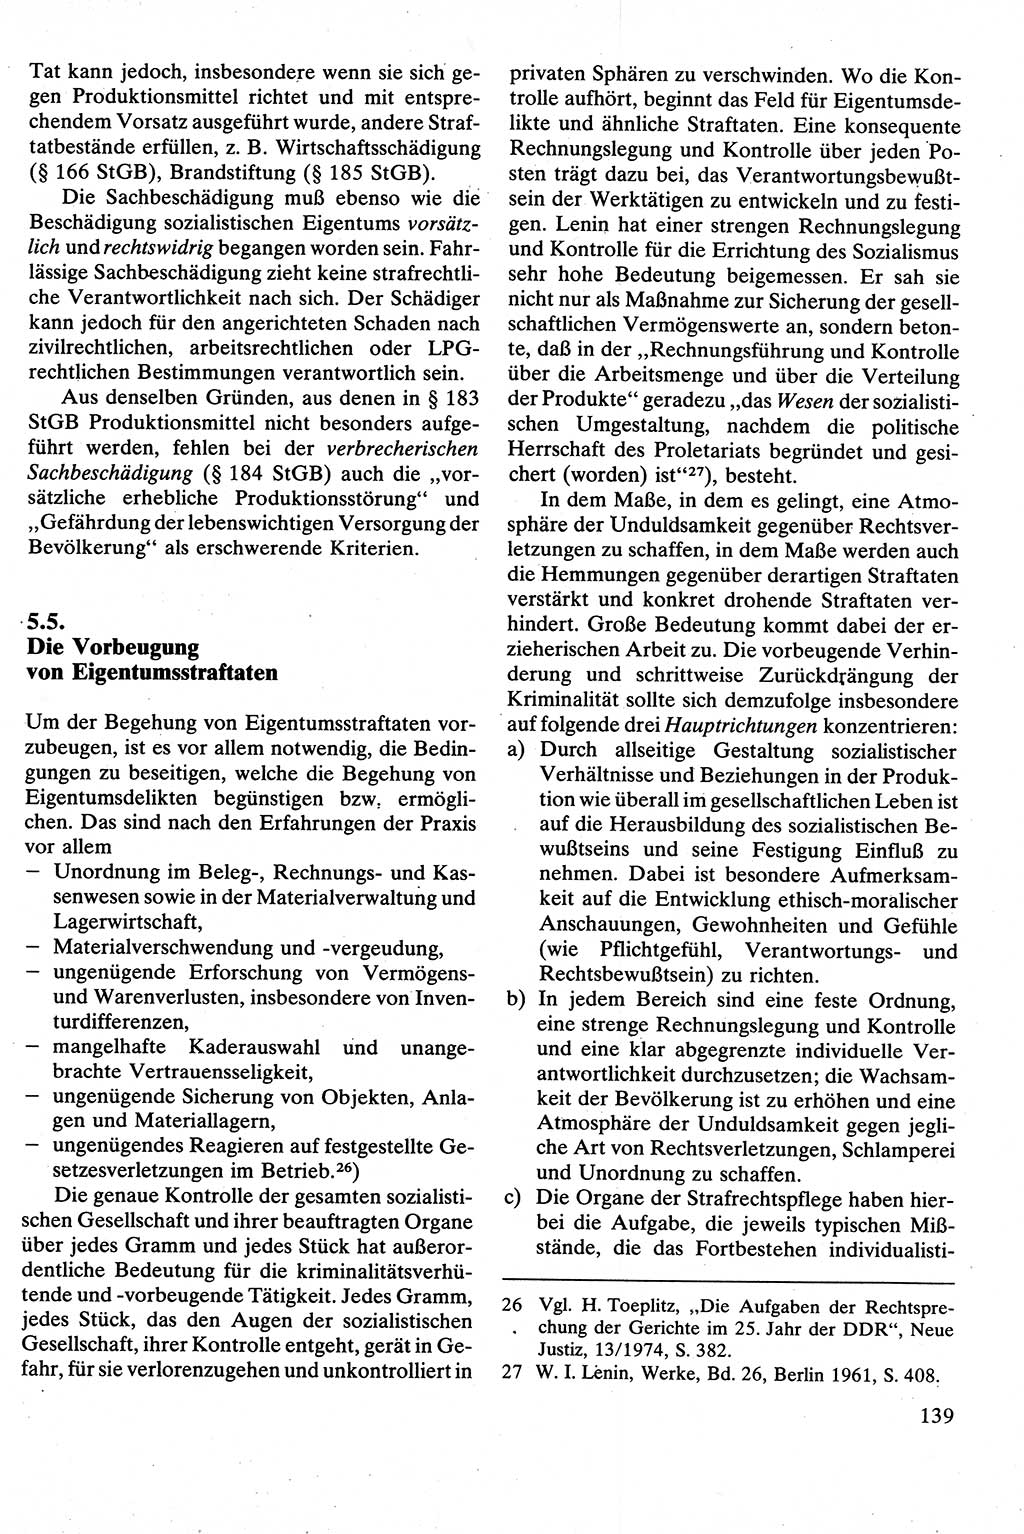 Strafrecht [Deutsche Demokratische Republik (DDR)], Besonderer Teil, Lehrbuch 1981, Seite 139 (Strafr. DDR BT Lb. 1981, S. 139)